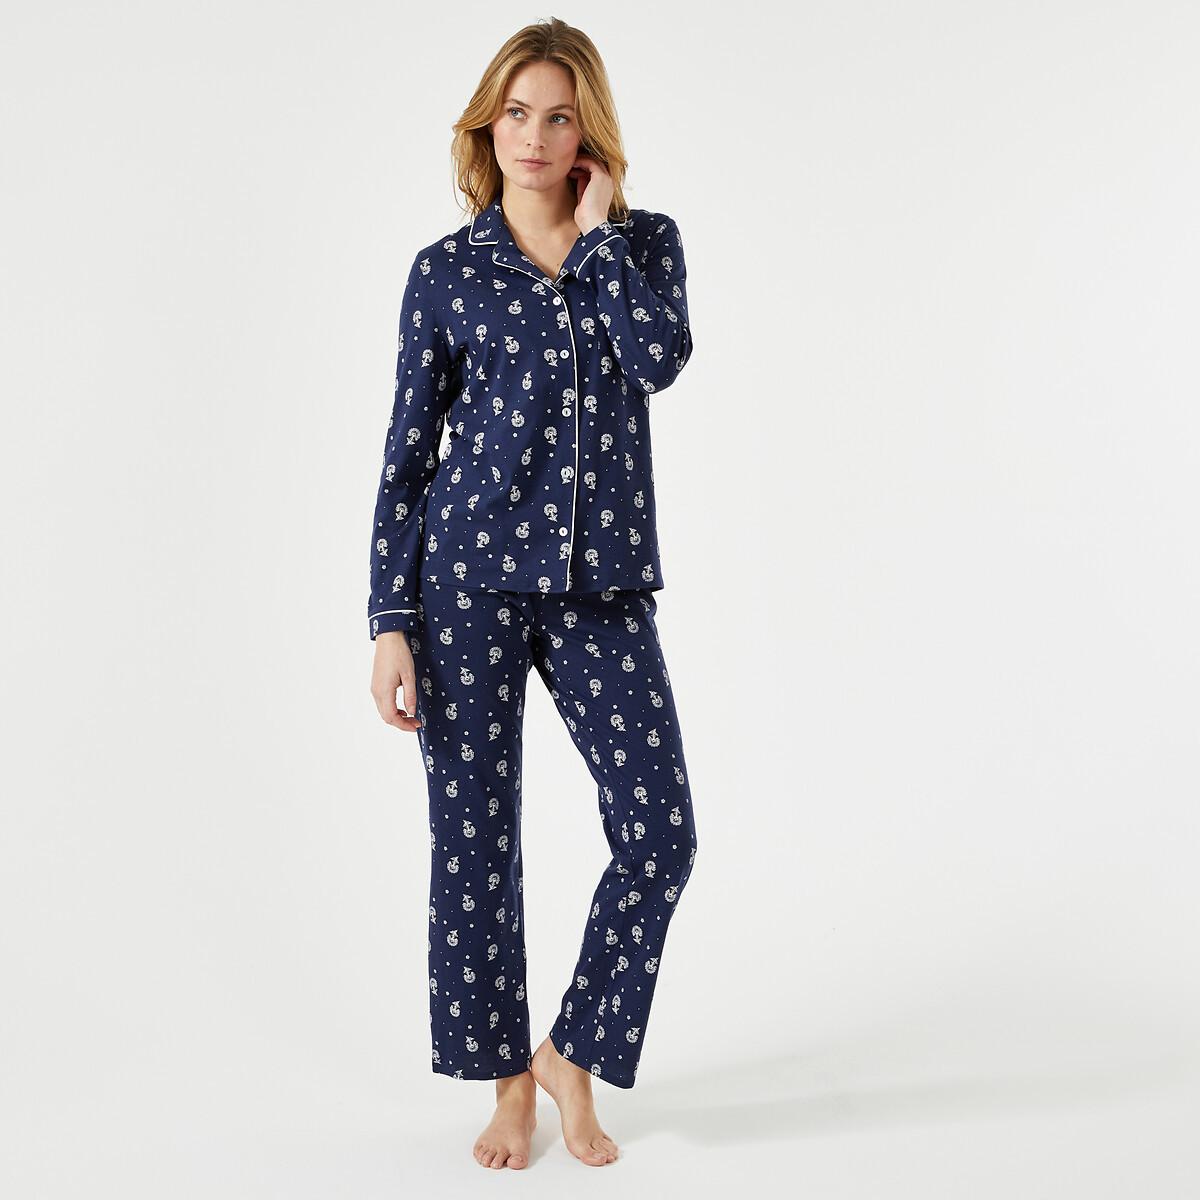 Bedruckter Pyjama Mit Langen Ärmeln Damen Weiss Bedruckt 42 von La Redoute Collections